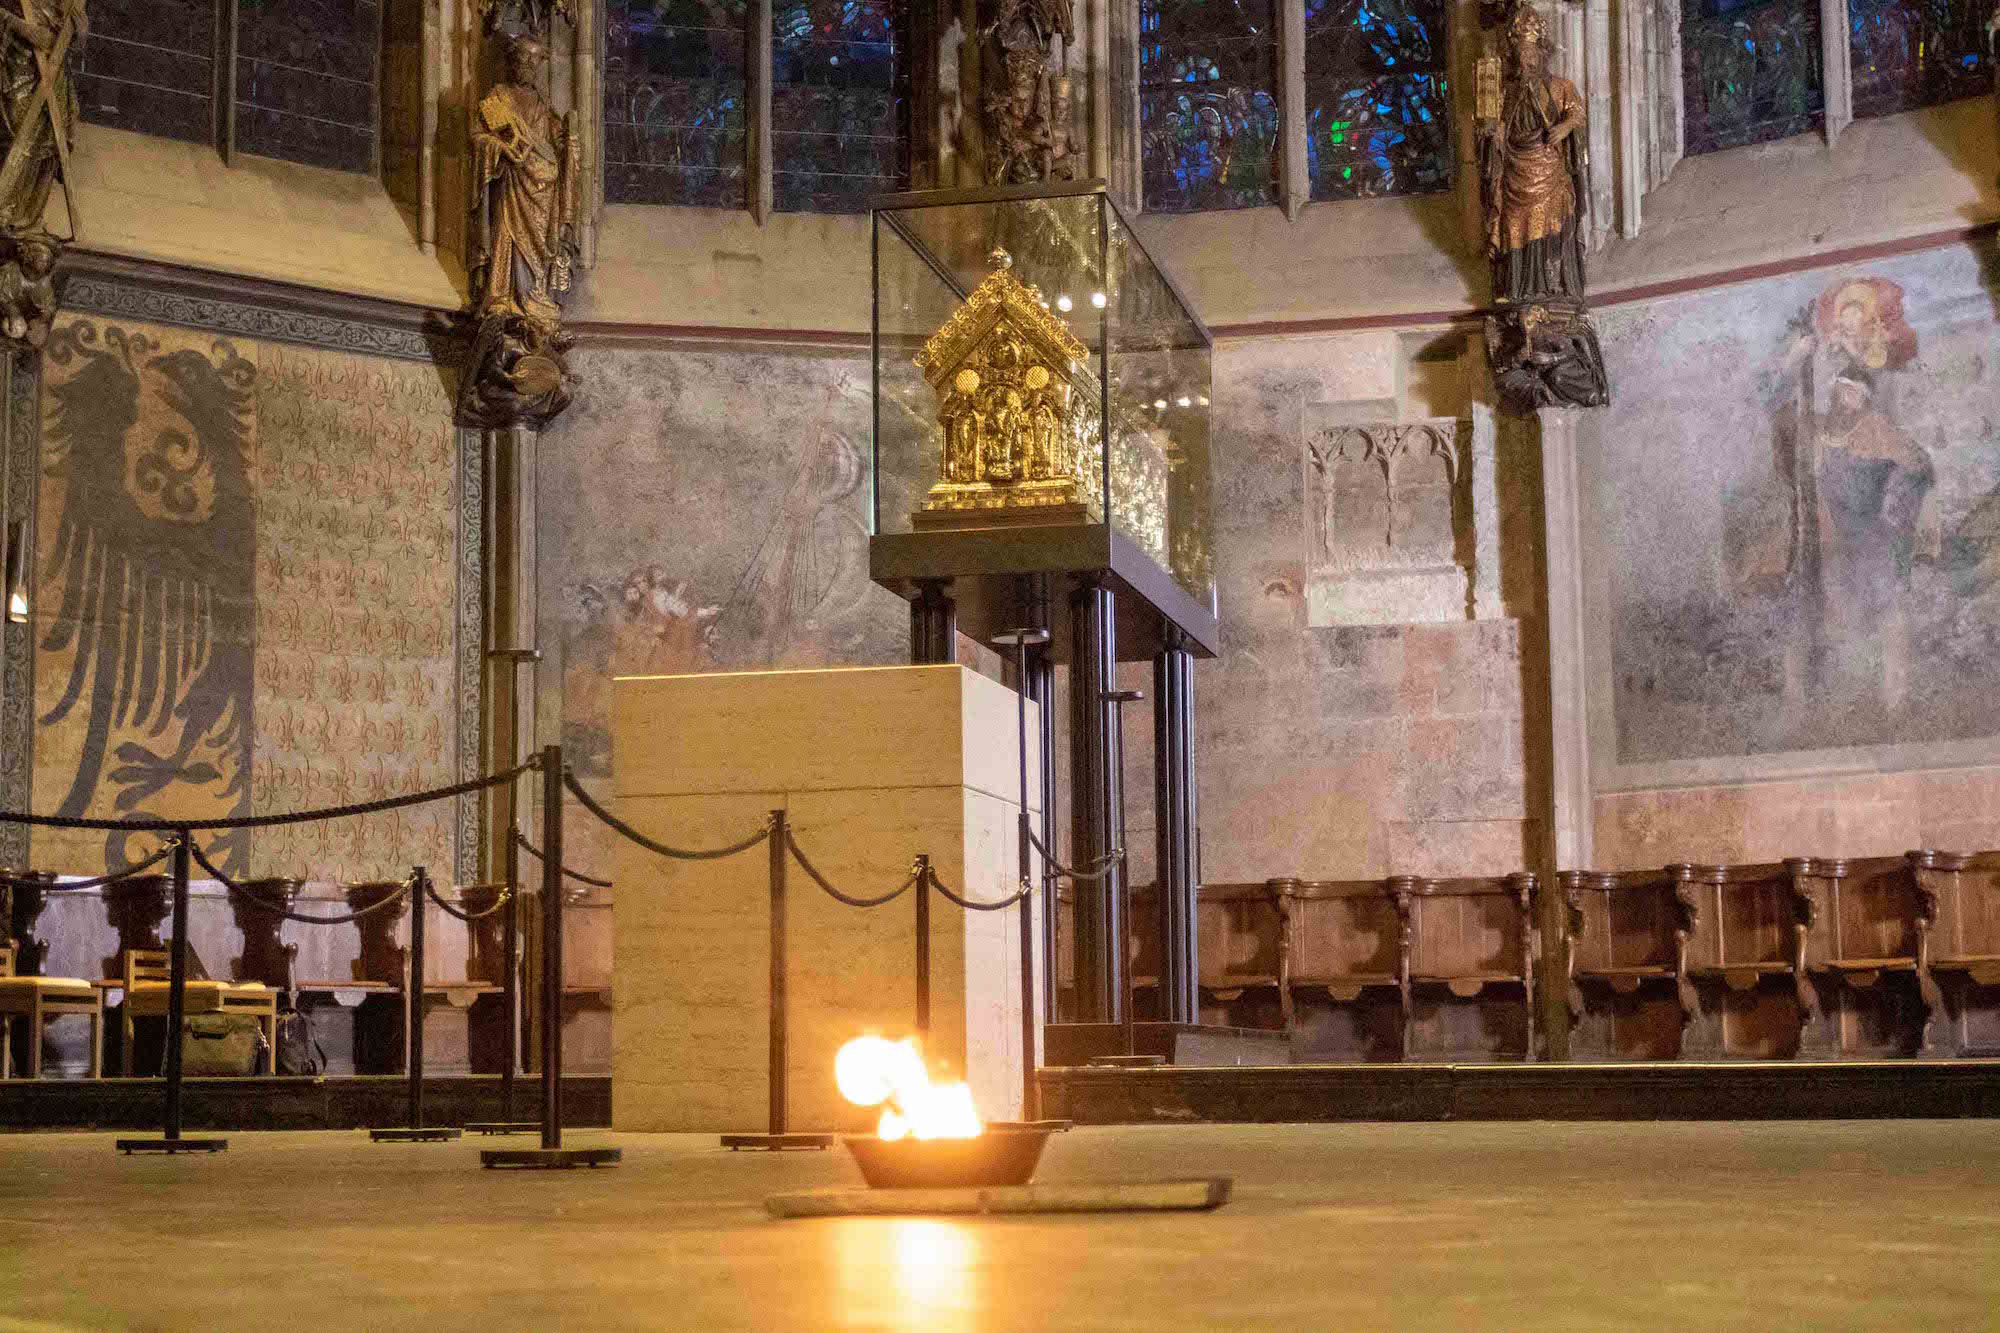 Die Feuerprobe hat der Aachener Dom bestanden – im konkreten Fall wurden Grillanzünder in einer Pfanne angezündet.